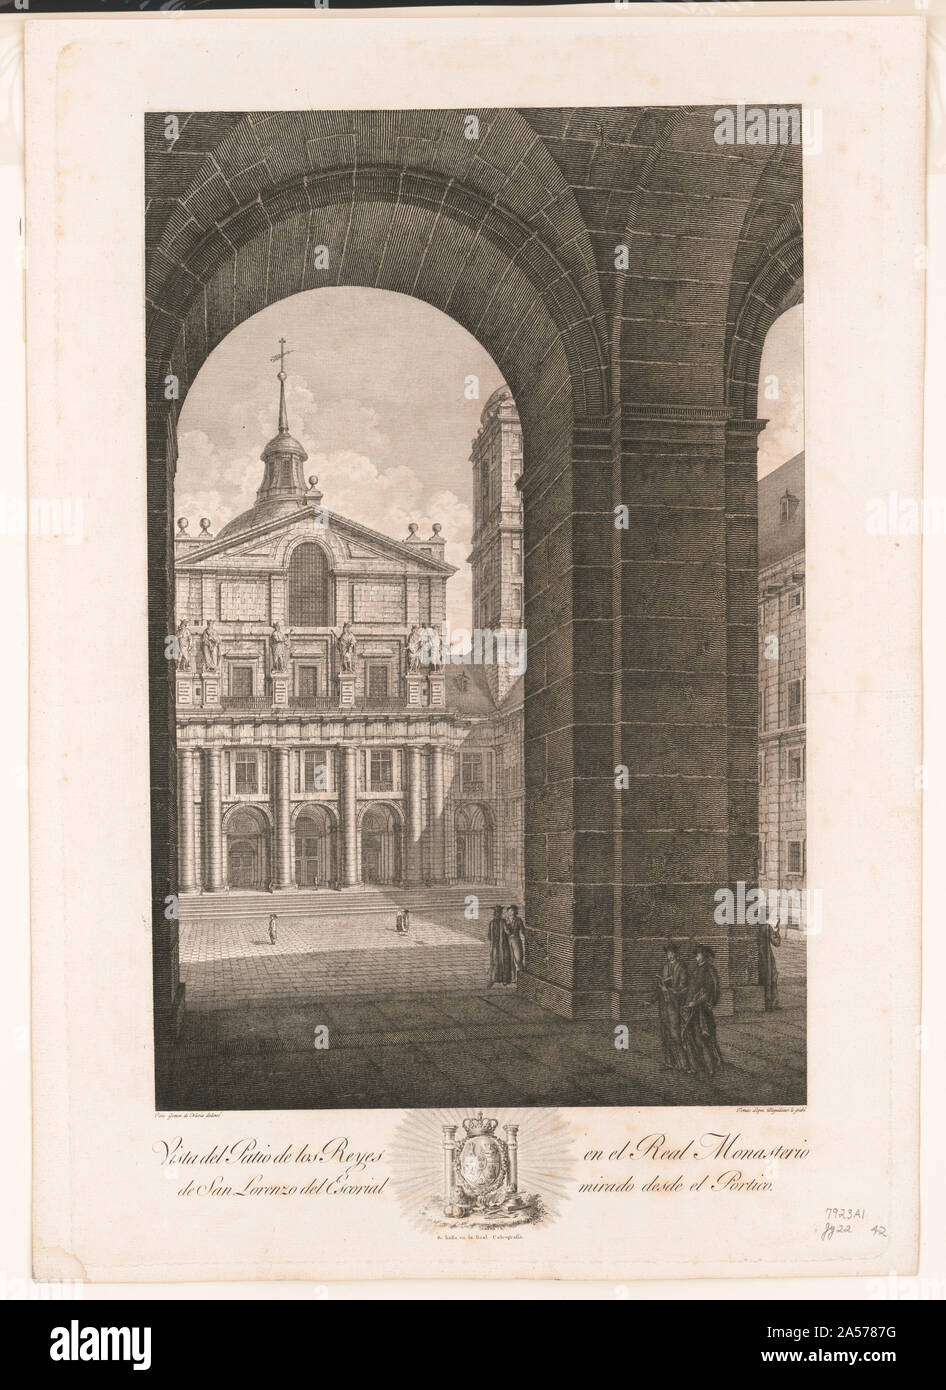 Vista del patio de los reyes en el real monasterio de San Lorenzo del escorial mirado desde el portico Stock Photo